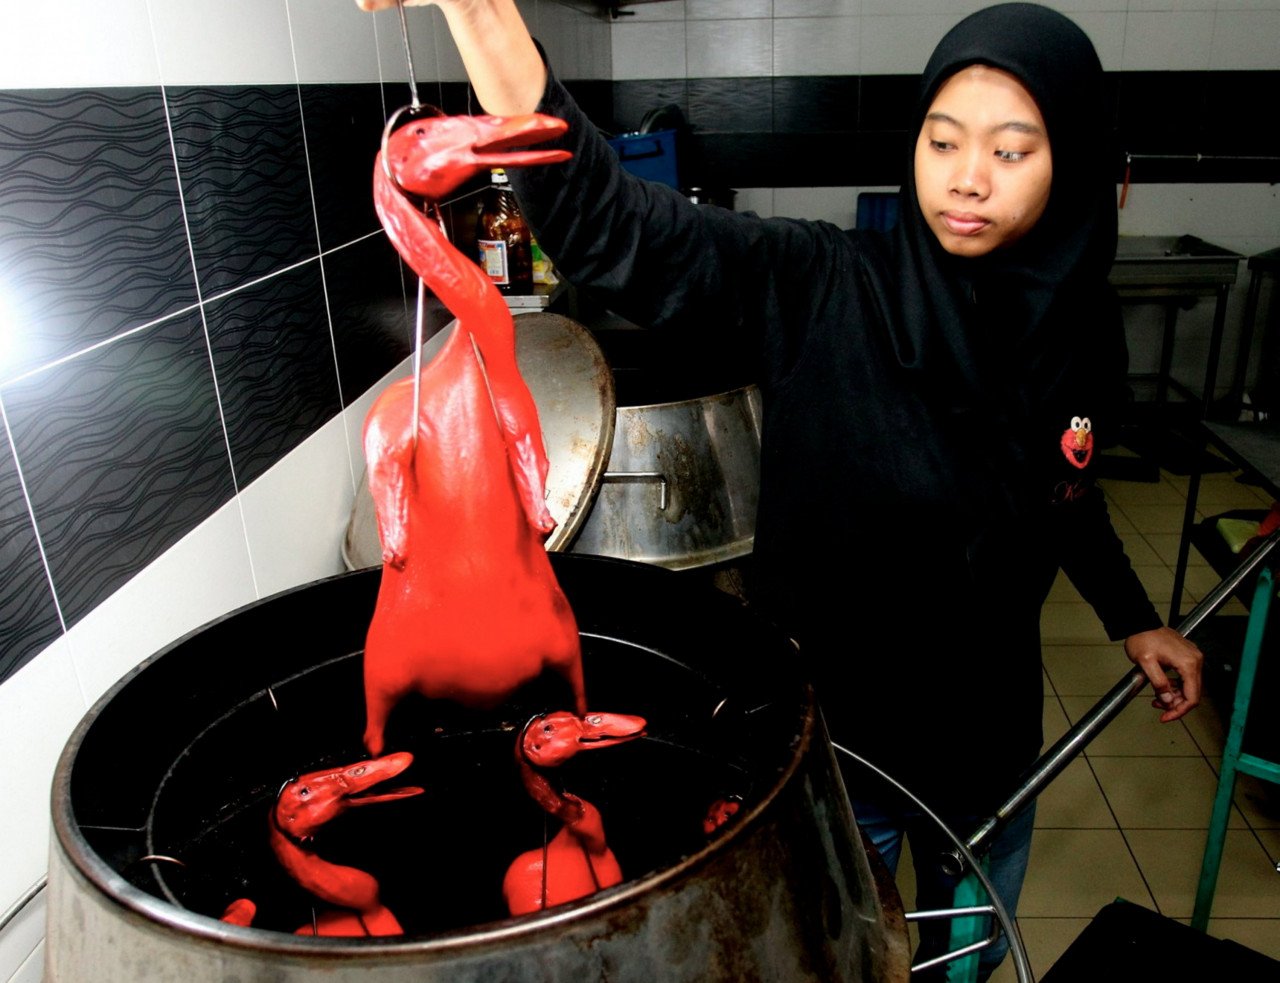 Pekerja Hidayah Azahar, 23, memasukkan beberapa ekor itik ke dalam pemanggang. - Gambar Bernama